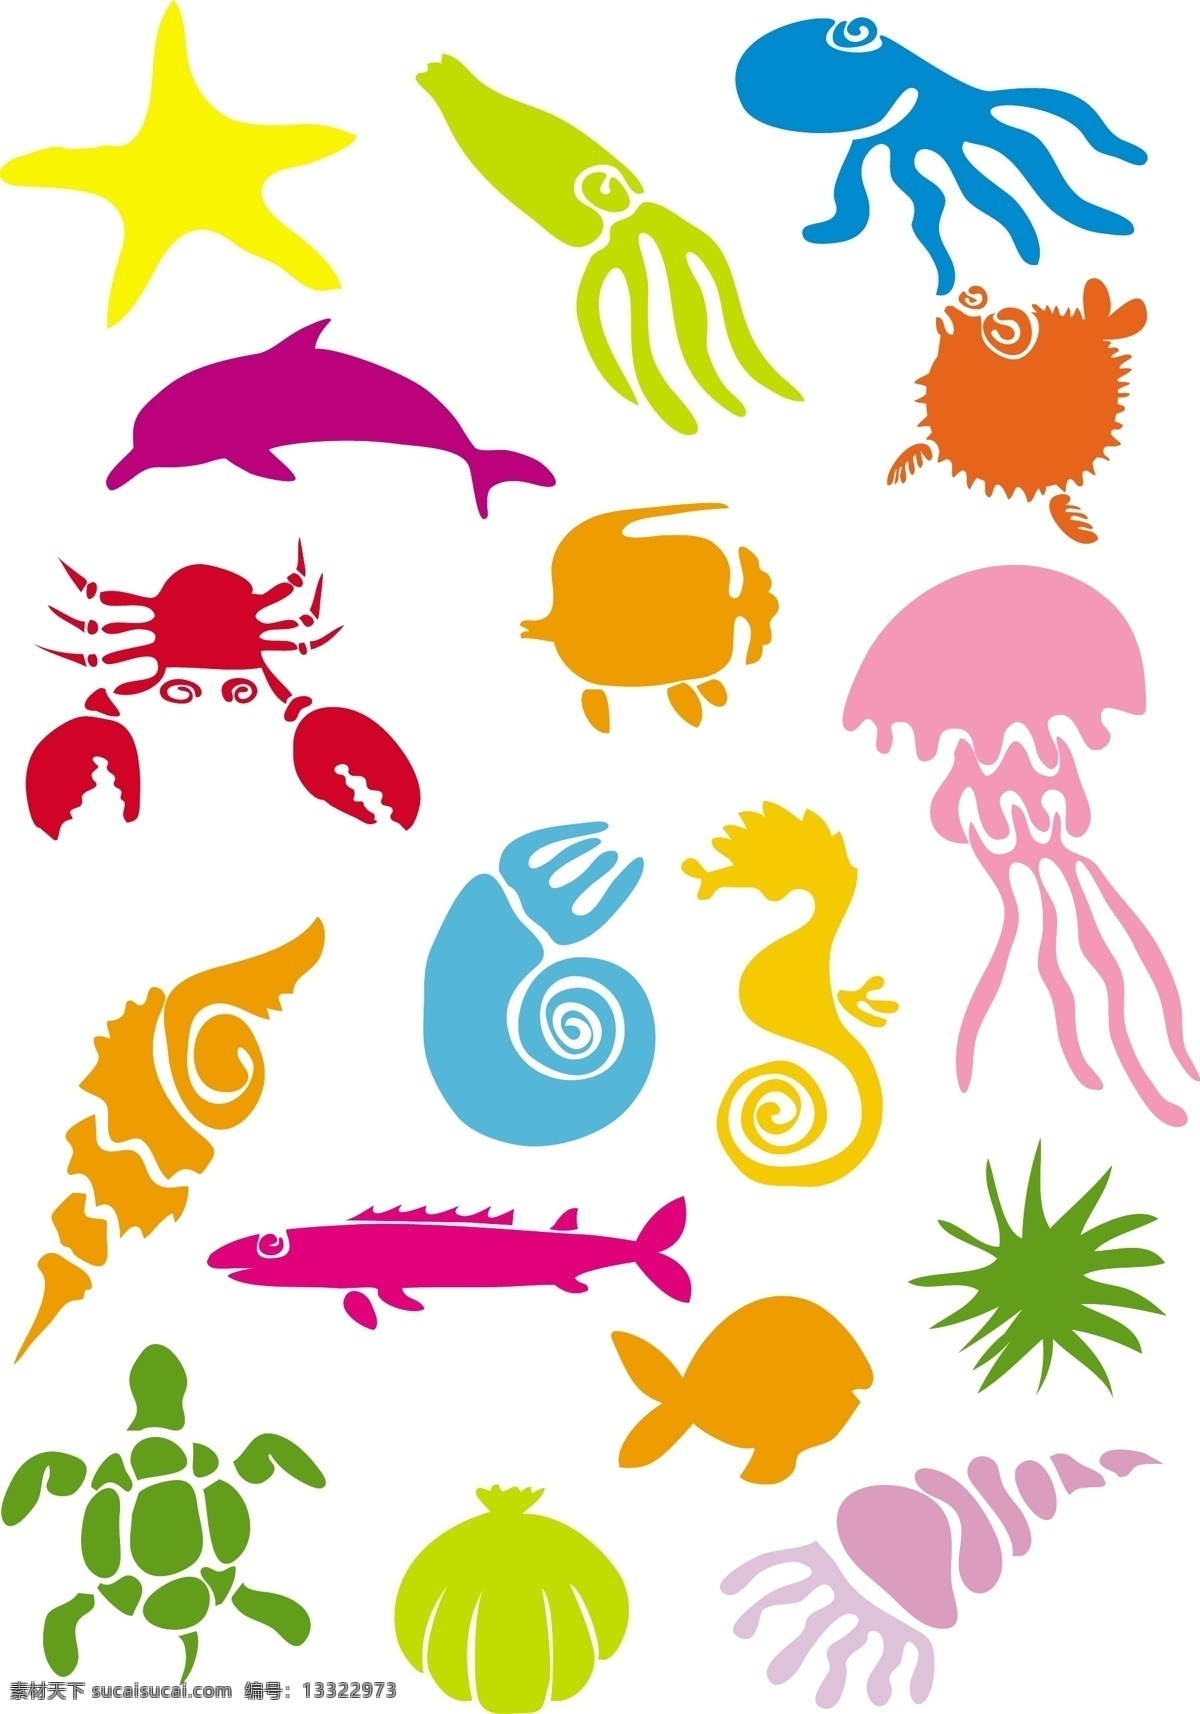 卡通 海洋生物 矢量 材料 海马 海豚 海星 海洋 可爱 美人鱼 生活 蟹 鱼 章鱼 矢量图 矢量人物